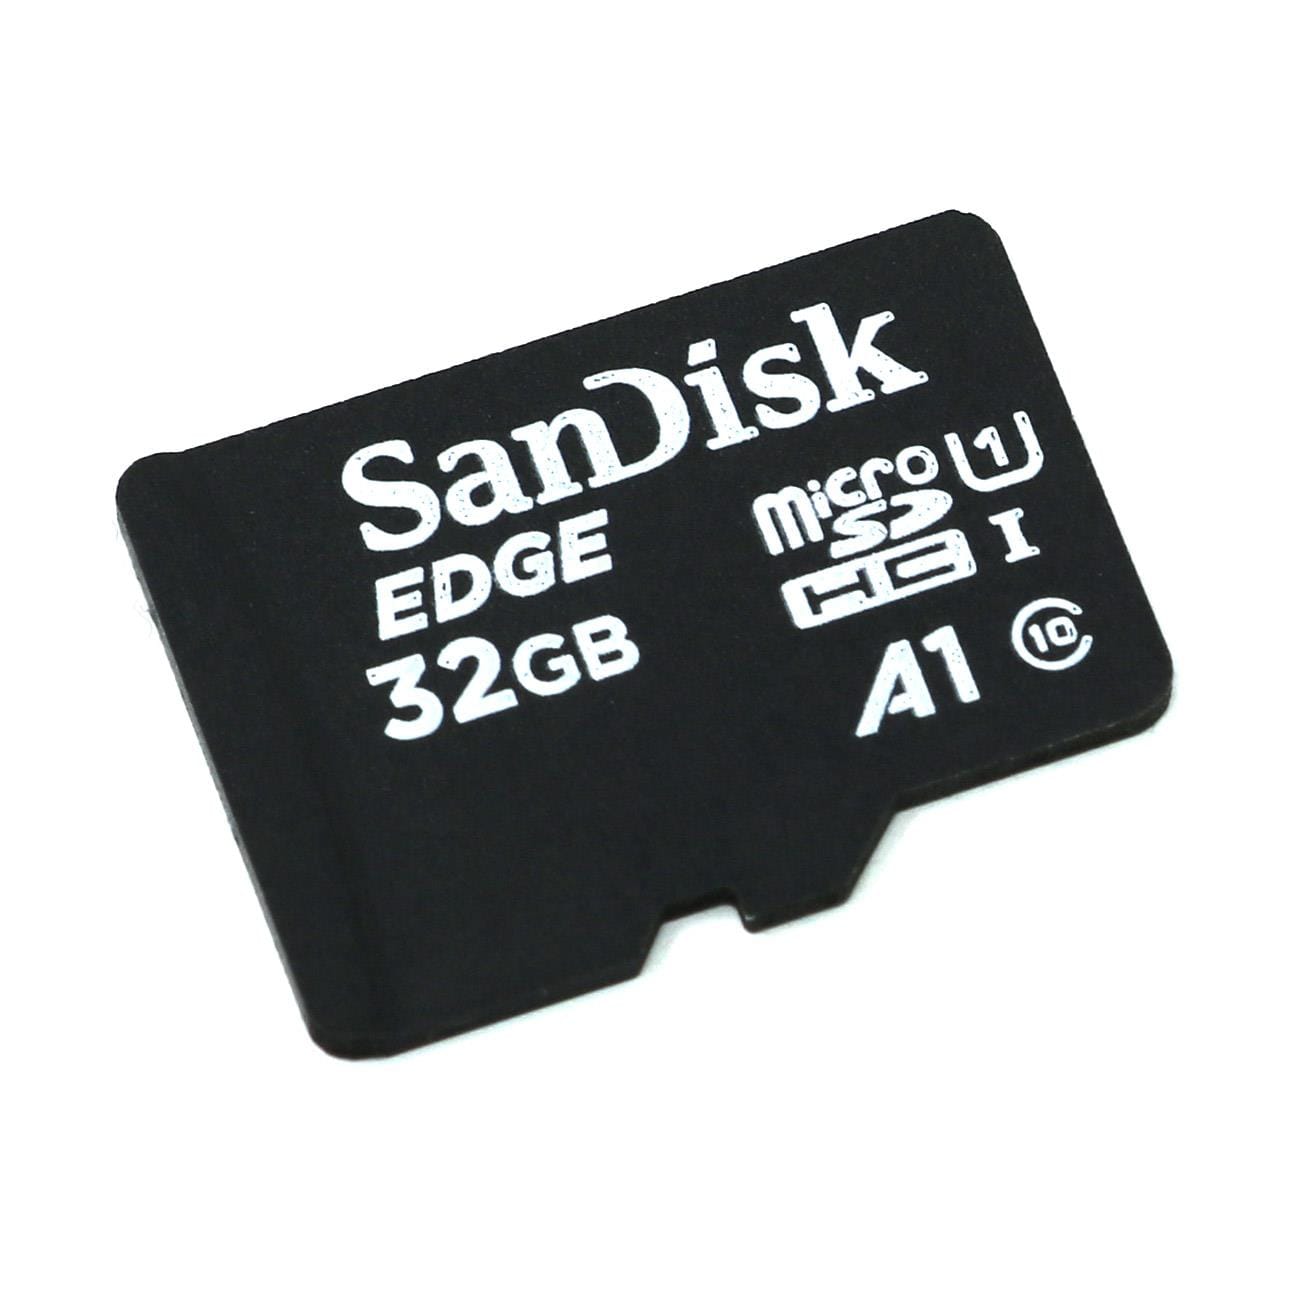 SanDisk MicroSD Card (Class 10 A1)